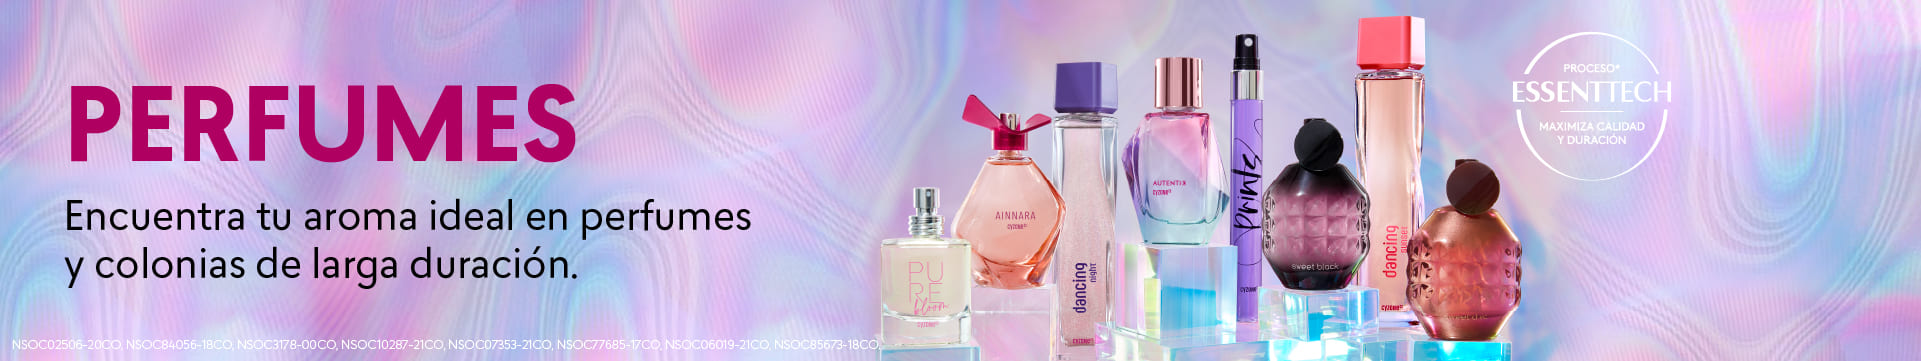 perfumes y colonias de mujer cyzone